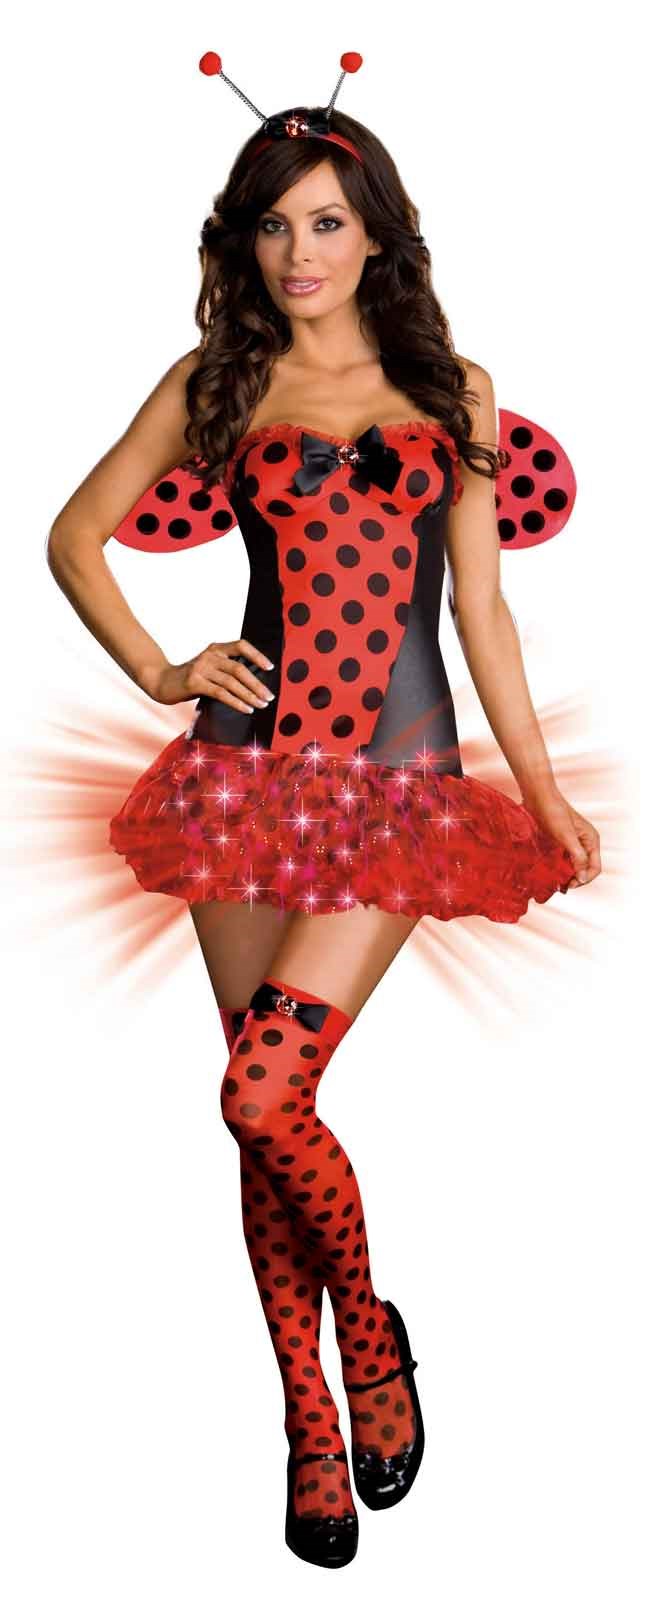 Light Me Up Ladybug Adult Costume